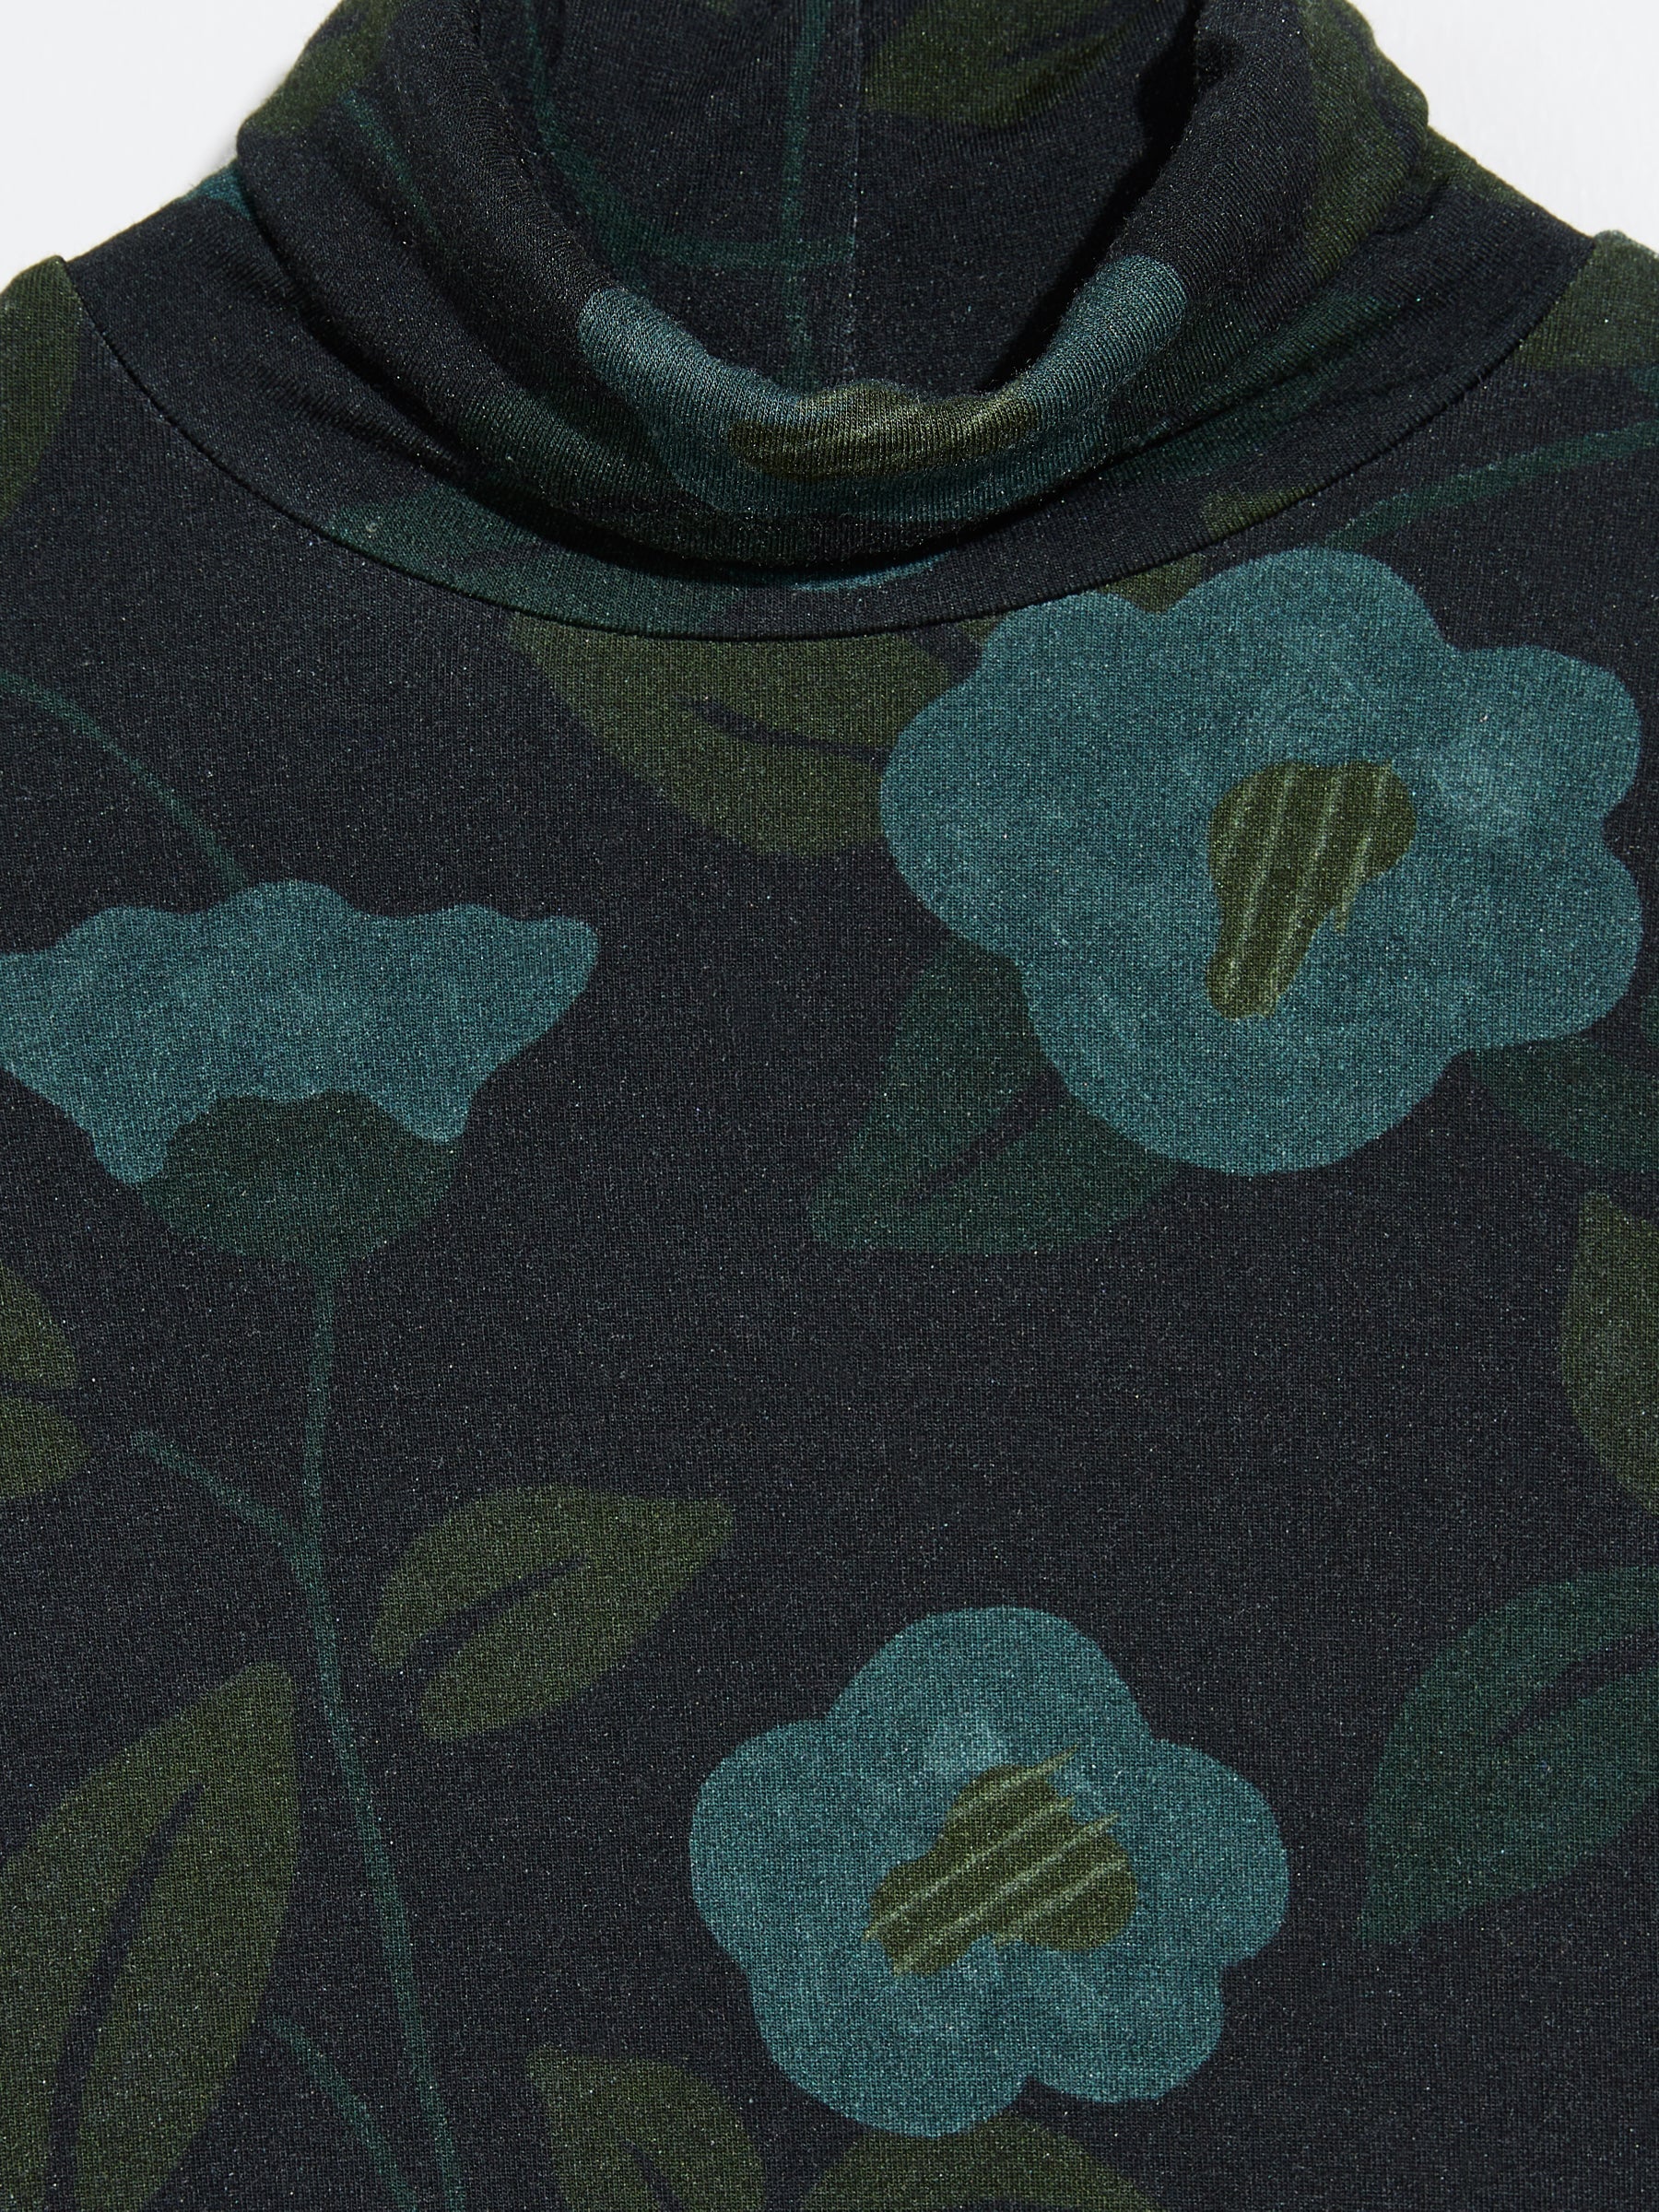 Bellerose - Velfie Long Sleeve T-Shirt